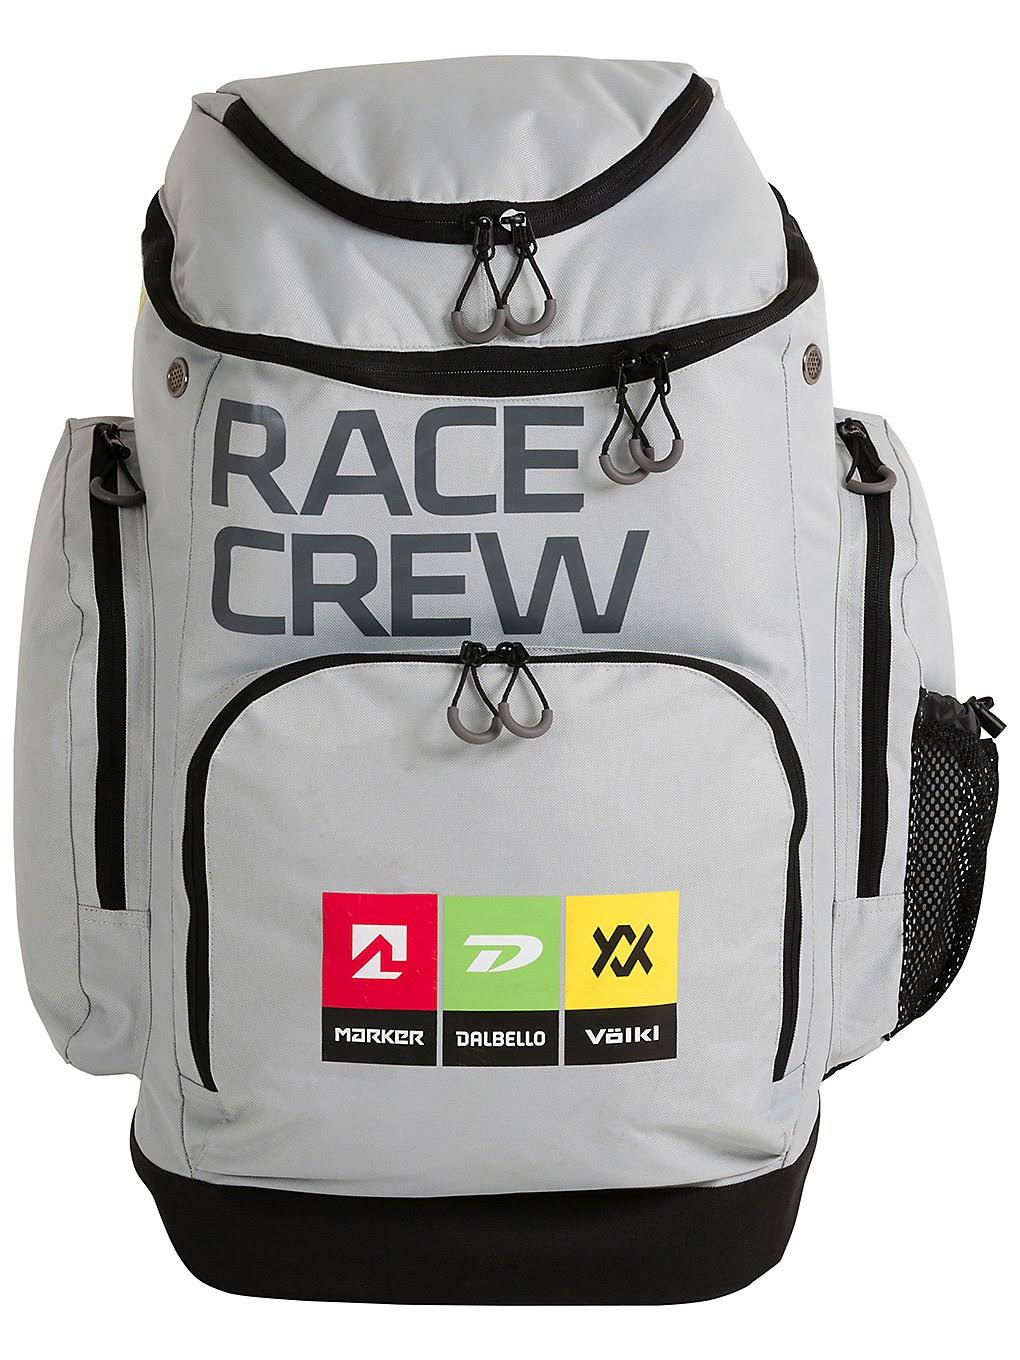 Völkl Mdv Team Backpack Medium Ski Bag gray